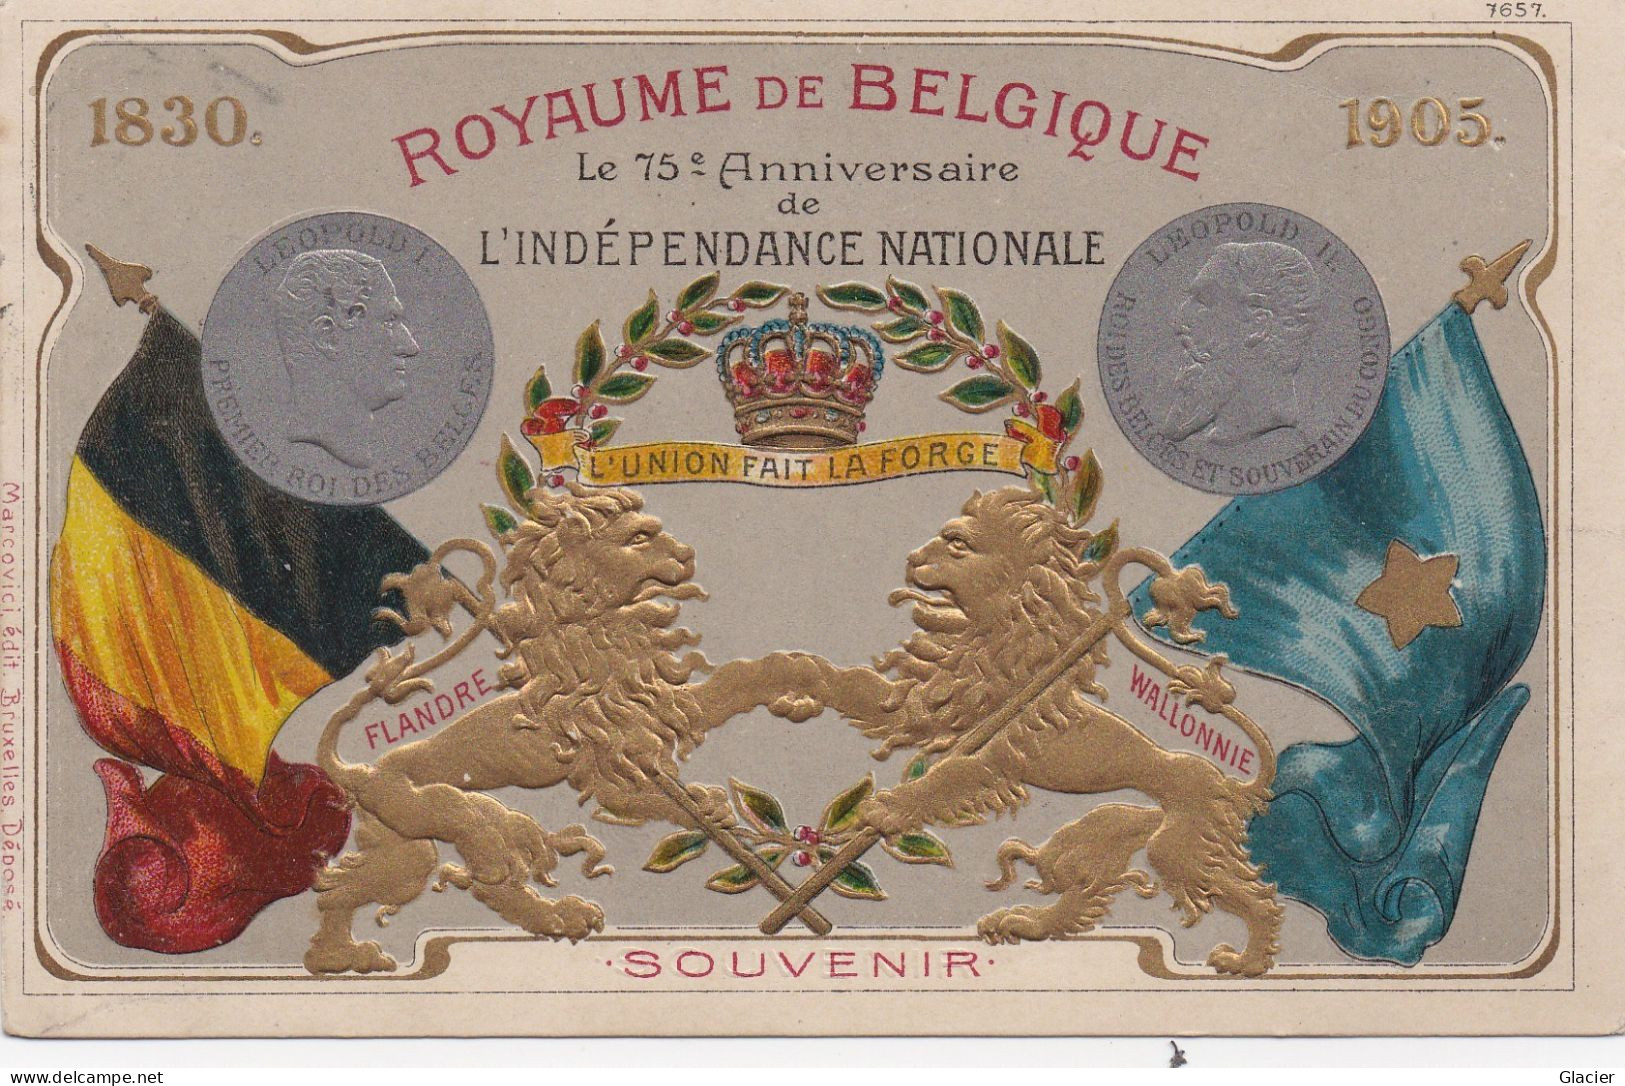 Royaume De Belgique - 75ème Anniversaire L'Indépendance Nationale - 1880 - 1905 - Carte Gauffrée - Histoire